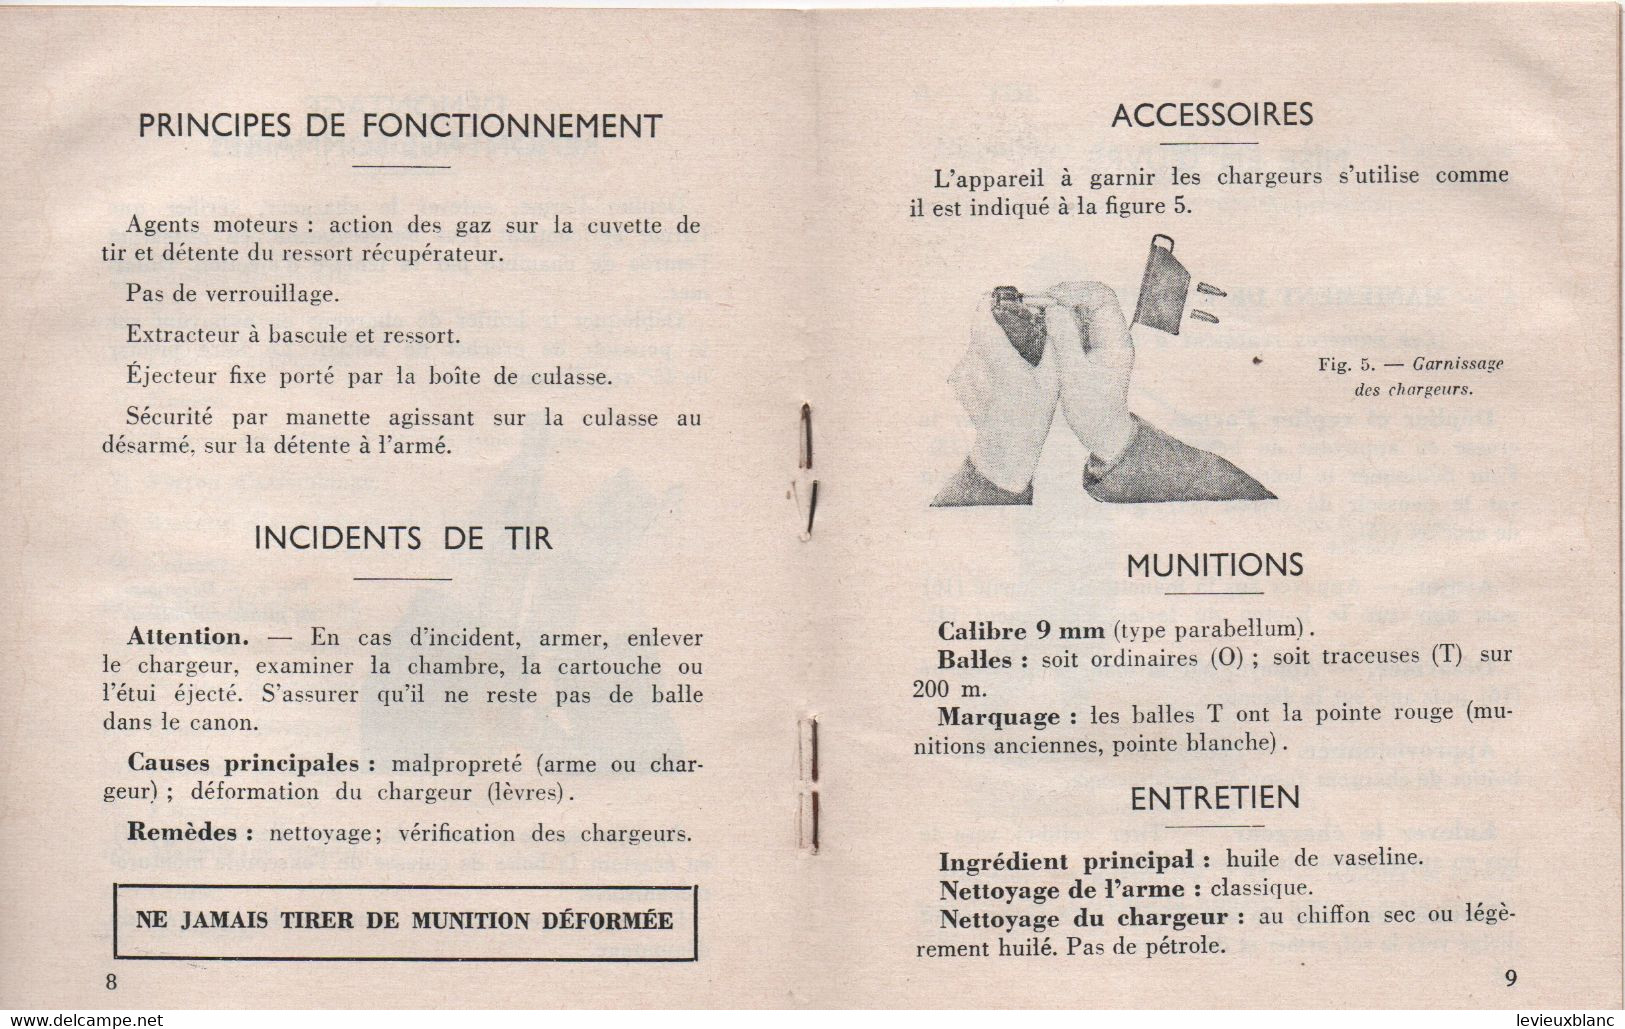 Guide Technique Sommaire Du Pistolet8 Mitrailleur De 9 Mm Modèle 1949  N°2106 EMA/ARMET/ 1964     VPN366 - Dokumente